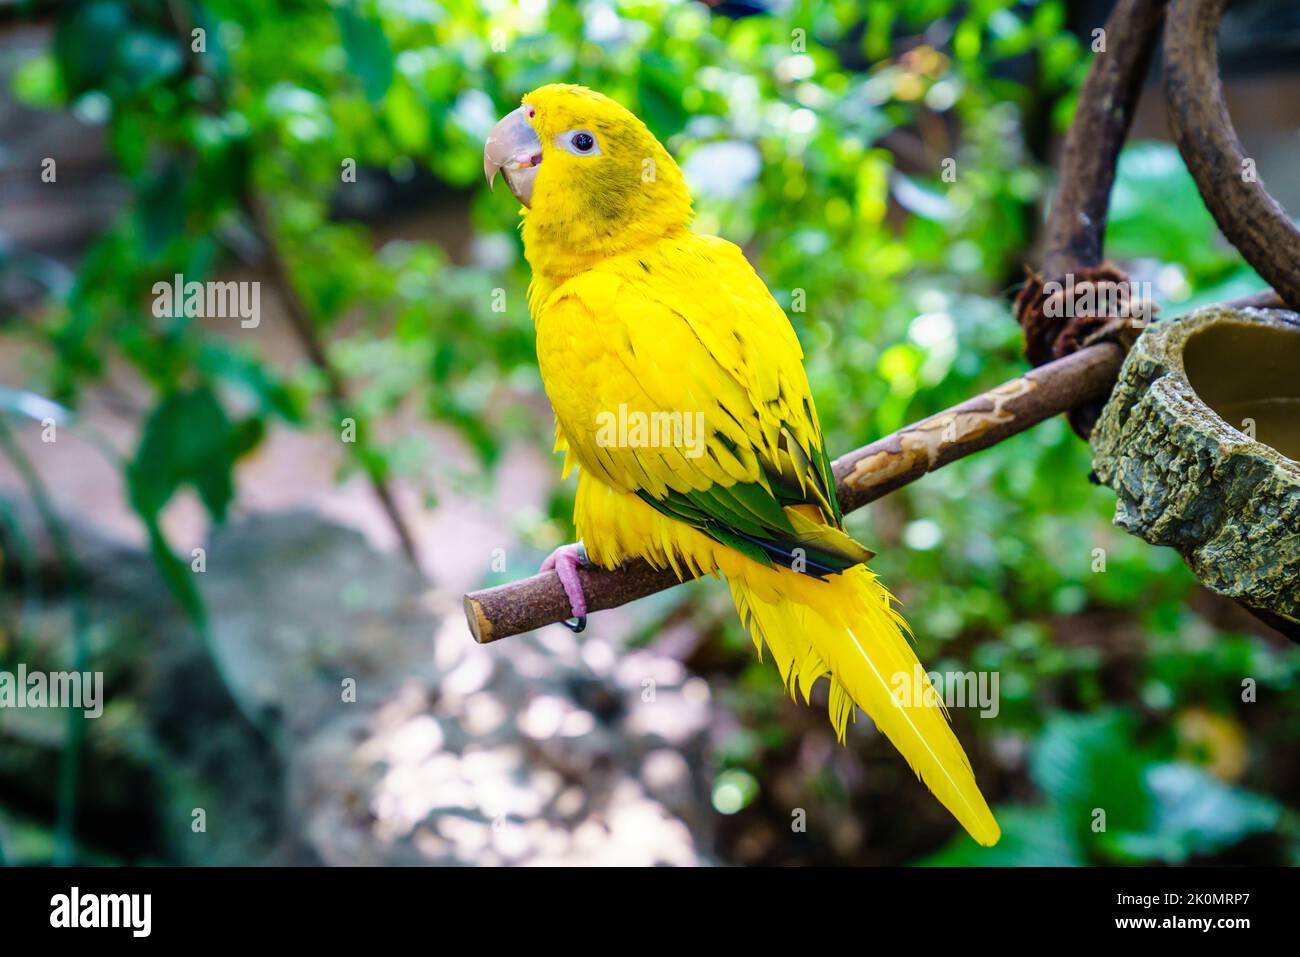 Retrato de loro amarillo en un santuario de aves Foto de stock